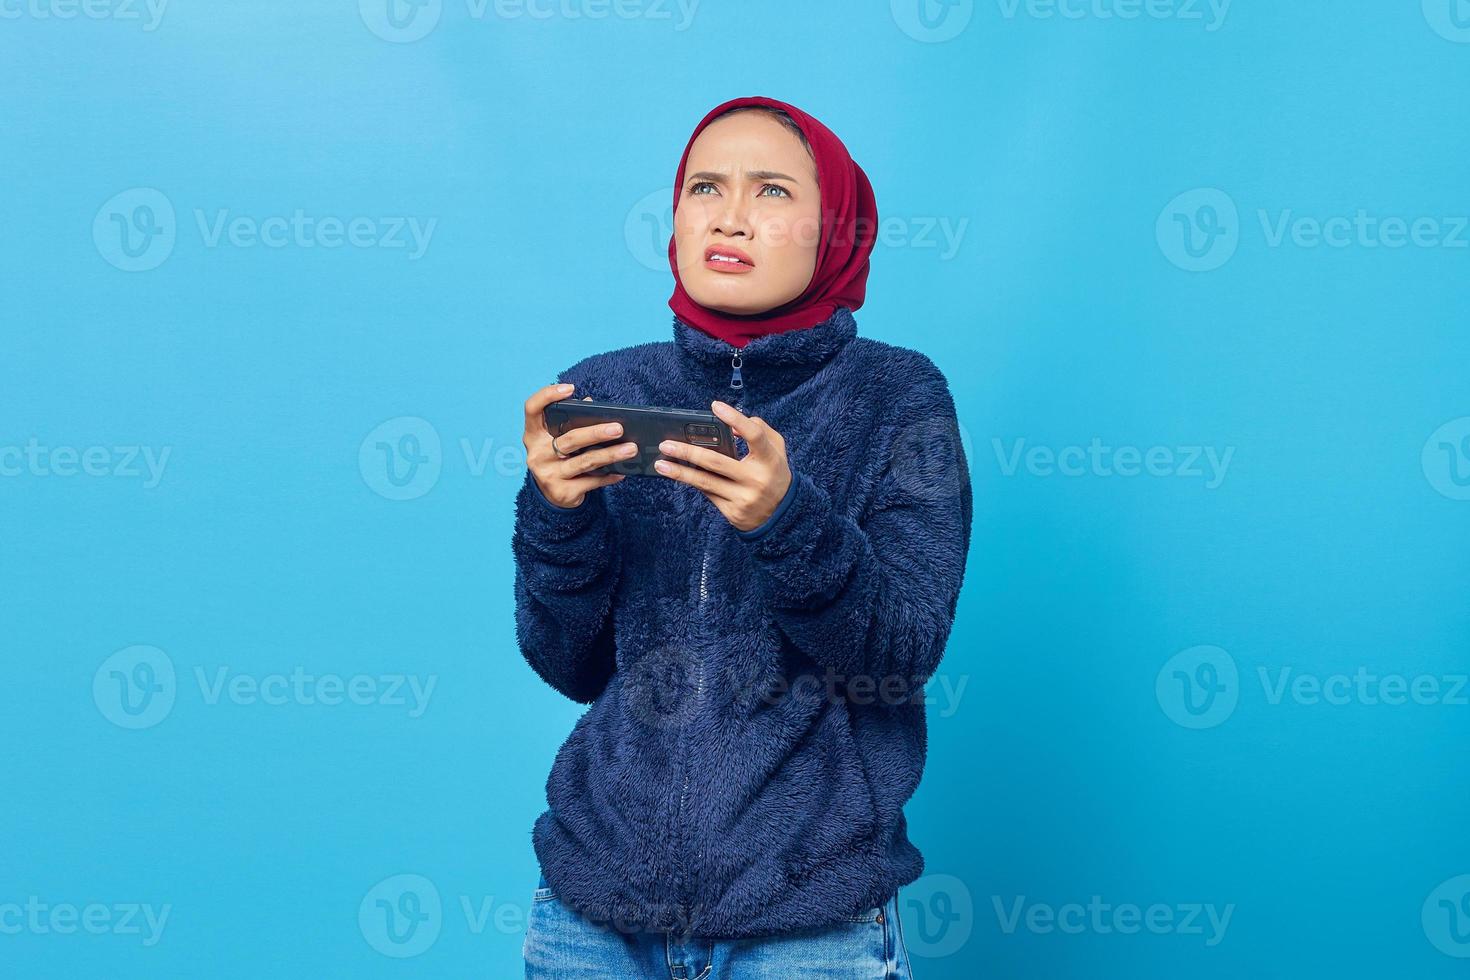 jovem asiática chocada jogando um videogame em um smartphone e olhando para cima sobre um fundo azul foto